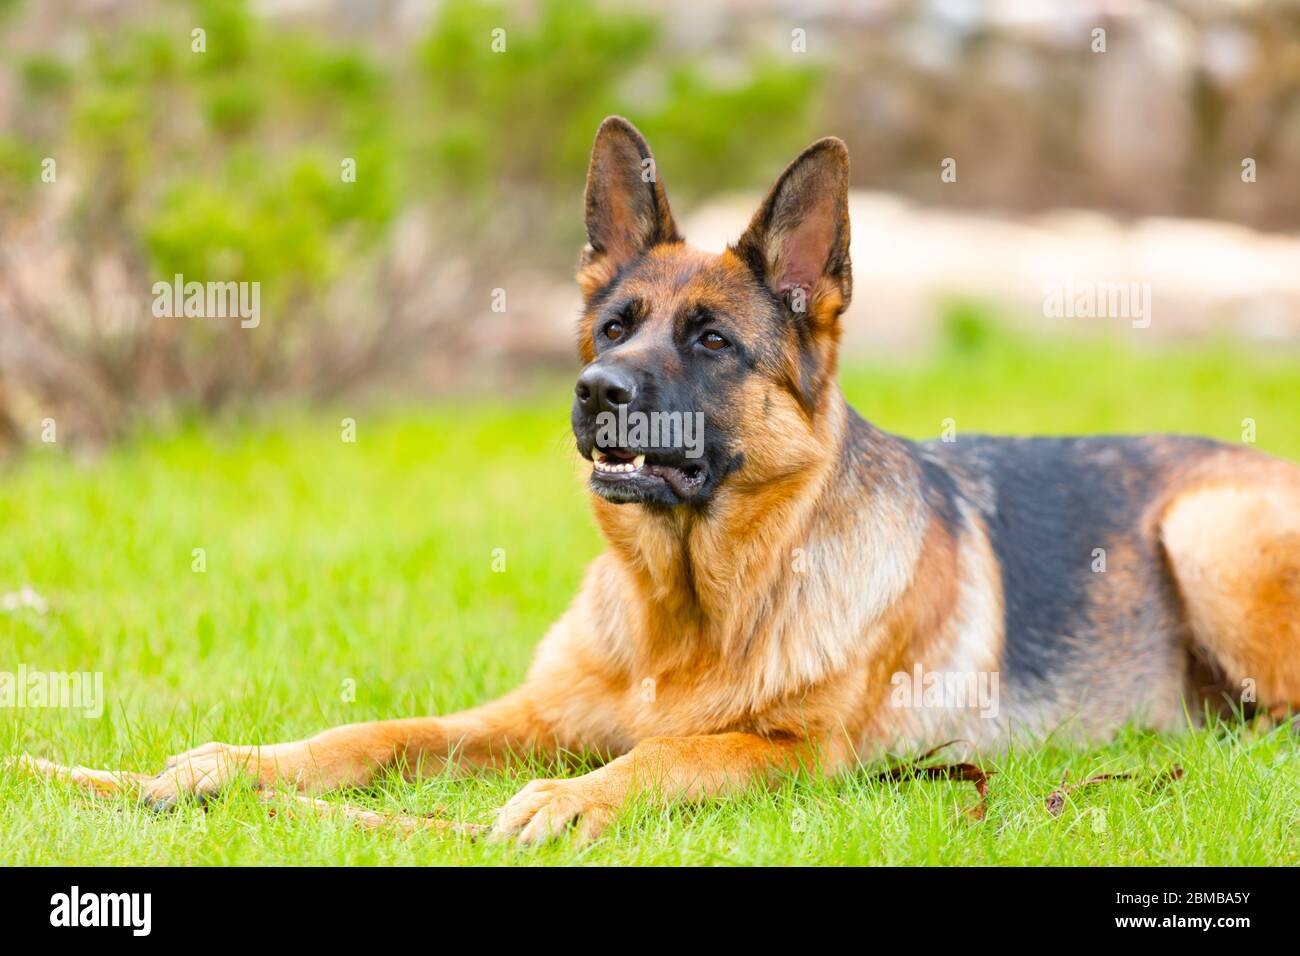 Pastore tedesco sdraiato sull'erba del parco. Ritratto di un cane purebred. Foto Stock